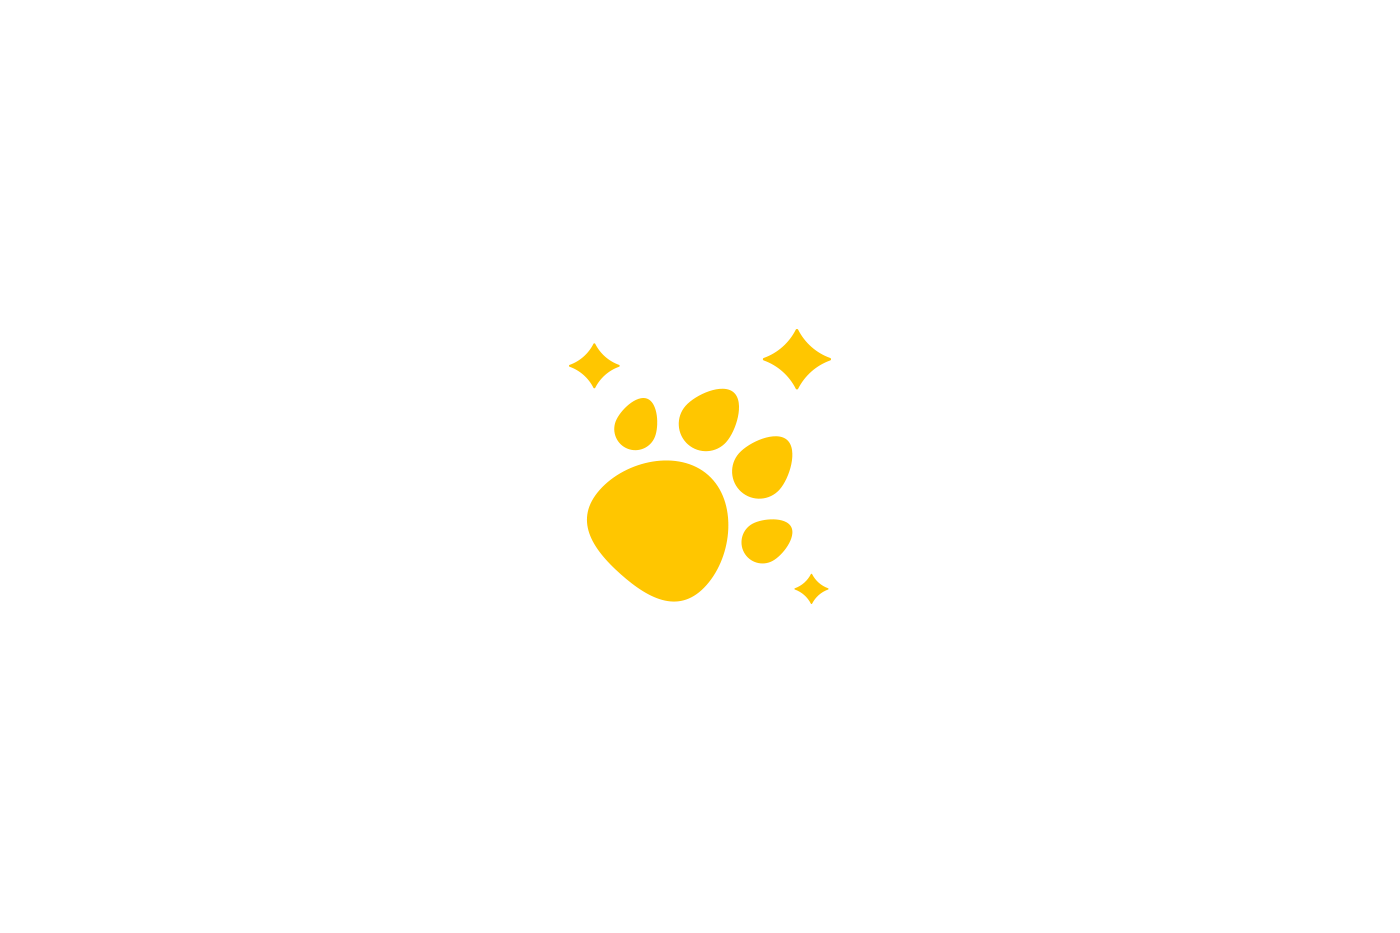 dog Pet animal veterinary puppy petshop brand branding  logo social media